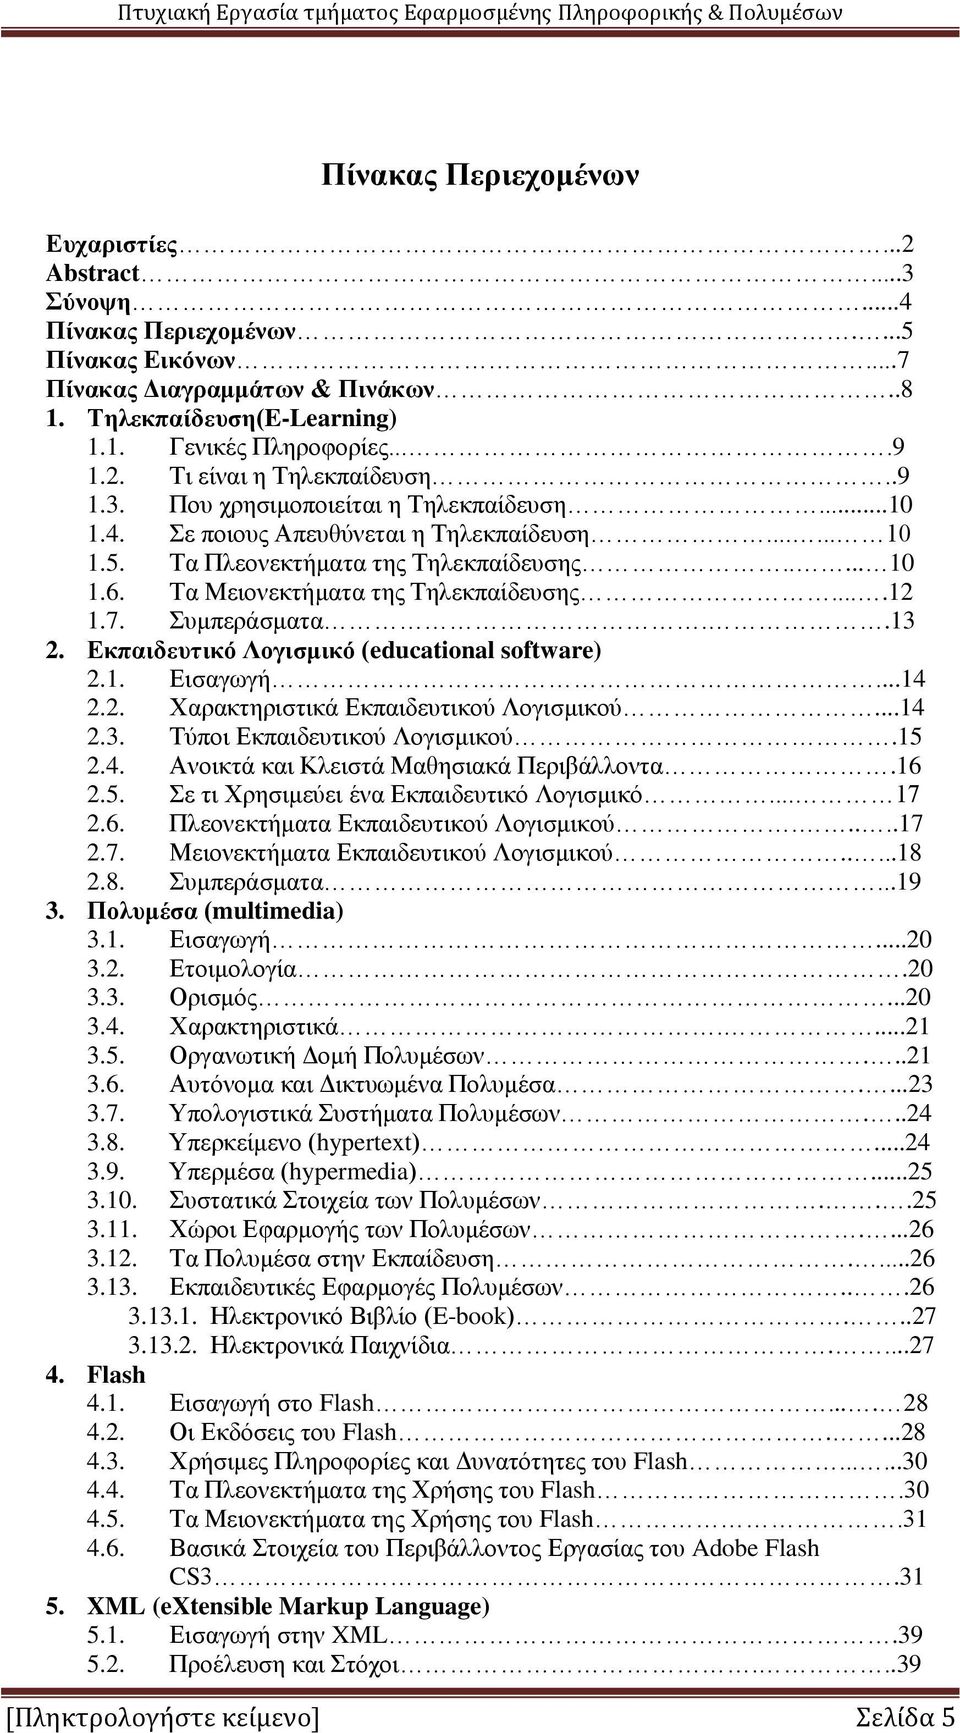 Τα Μειονεκτήματα της Τηλεκπαίδευσης....12 1.7. Συμπεράσματα..13 2. Εκπαιδευτικό Λογισμικό (educational software) 2.1. Εισαγωγή...14 2.2. Χαρακτηριστικά Εκπαιδευτικού Λογισμικού...14 2.3. Τύποι Εκπαιδευτικού Λογισμικού.